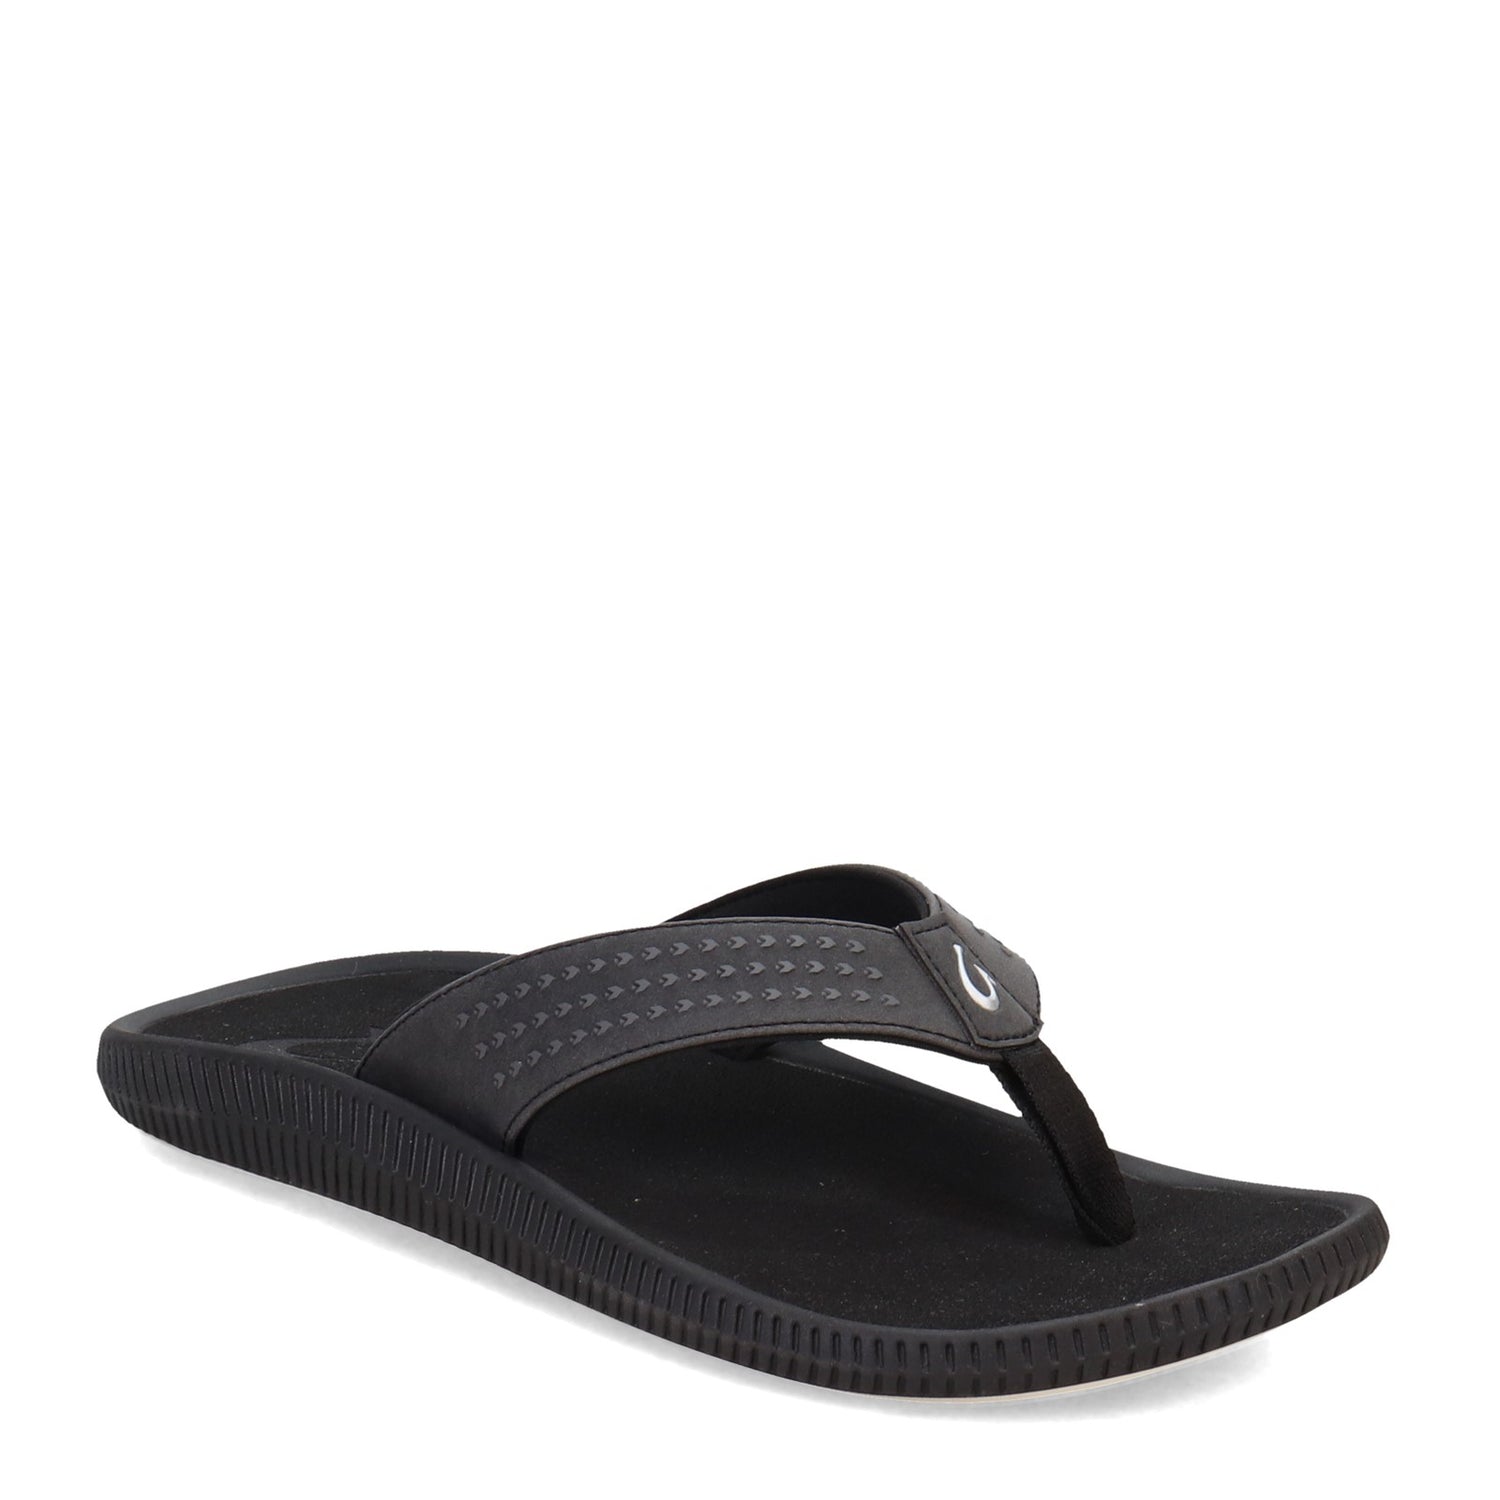 Peltz Shoes  Men's OluKai Ulele Sandal Black Black 10435-4040